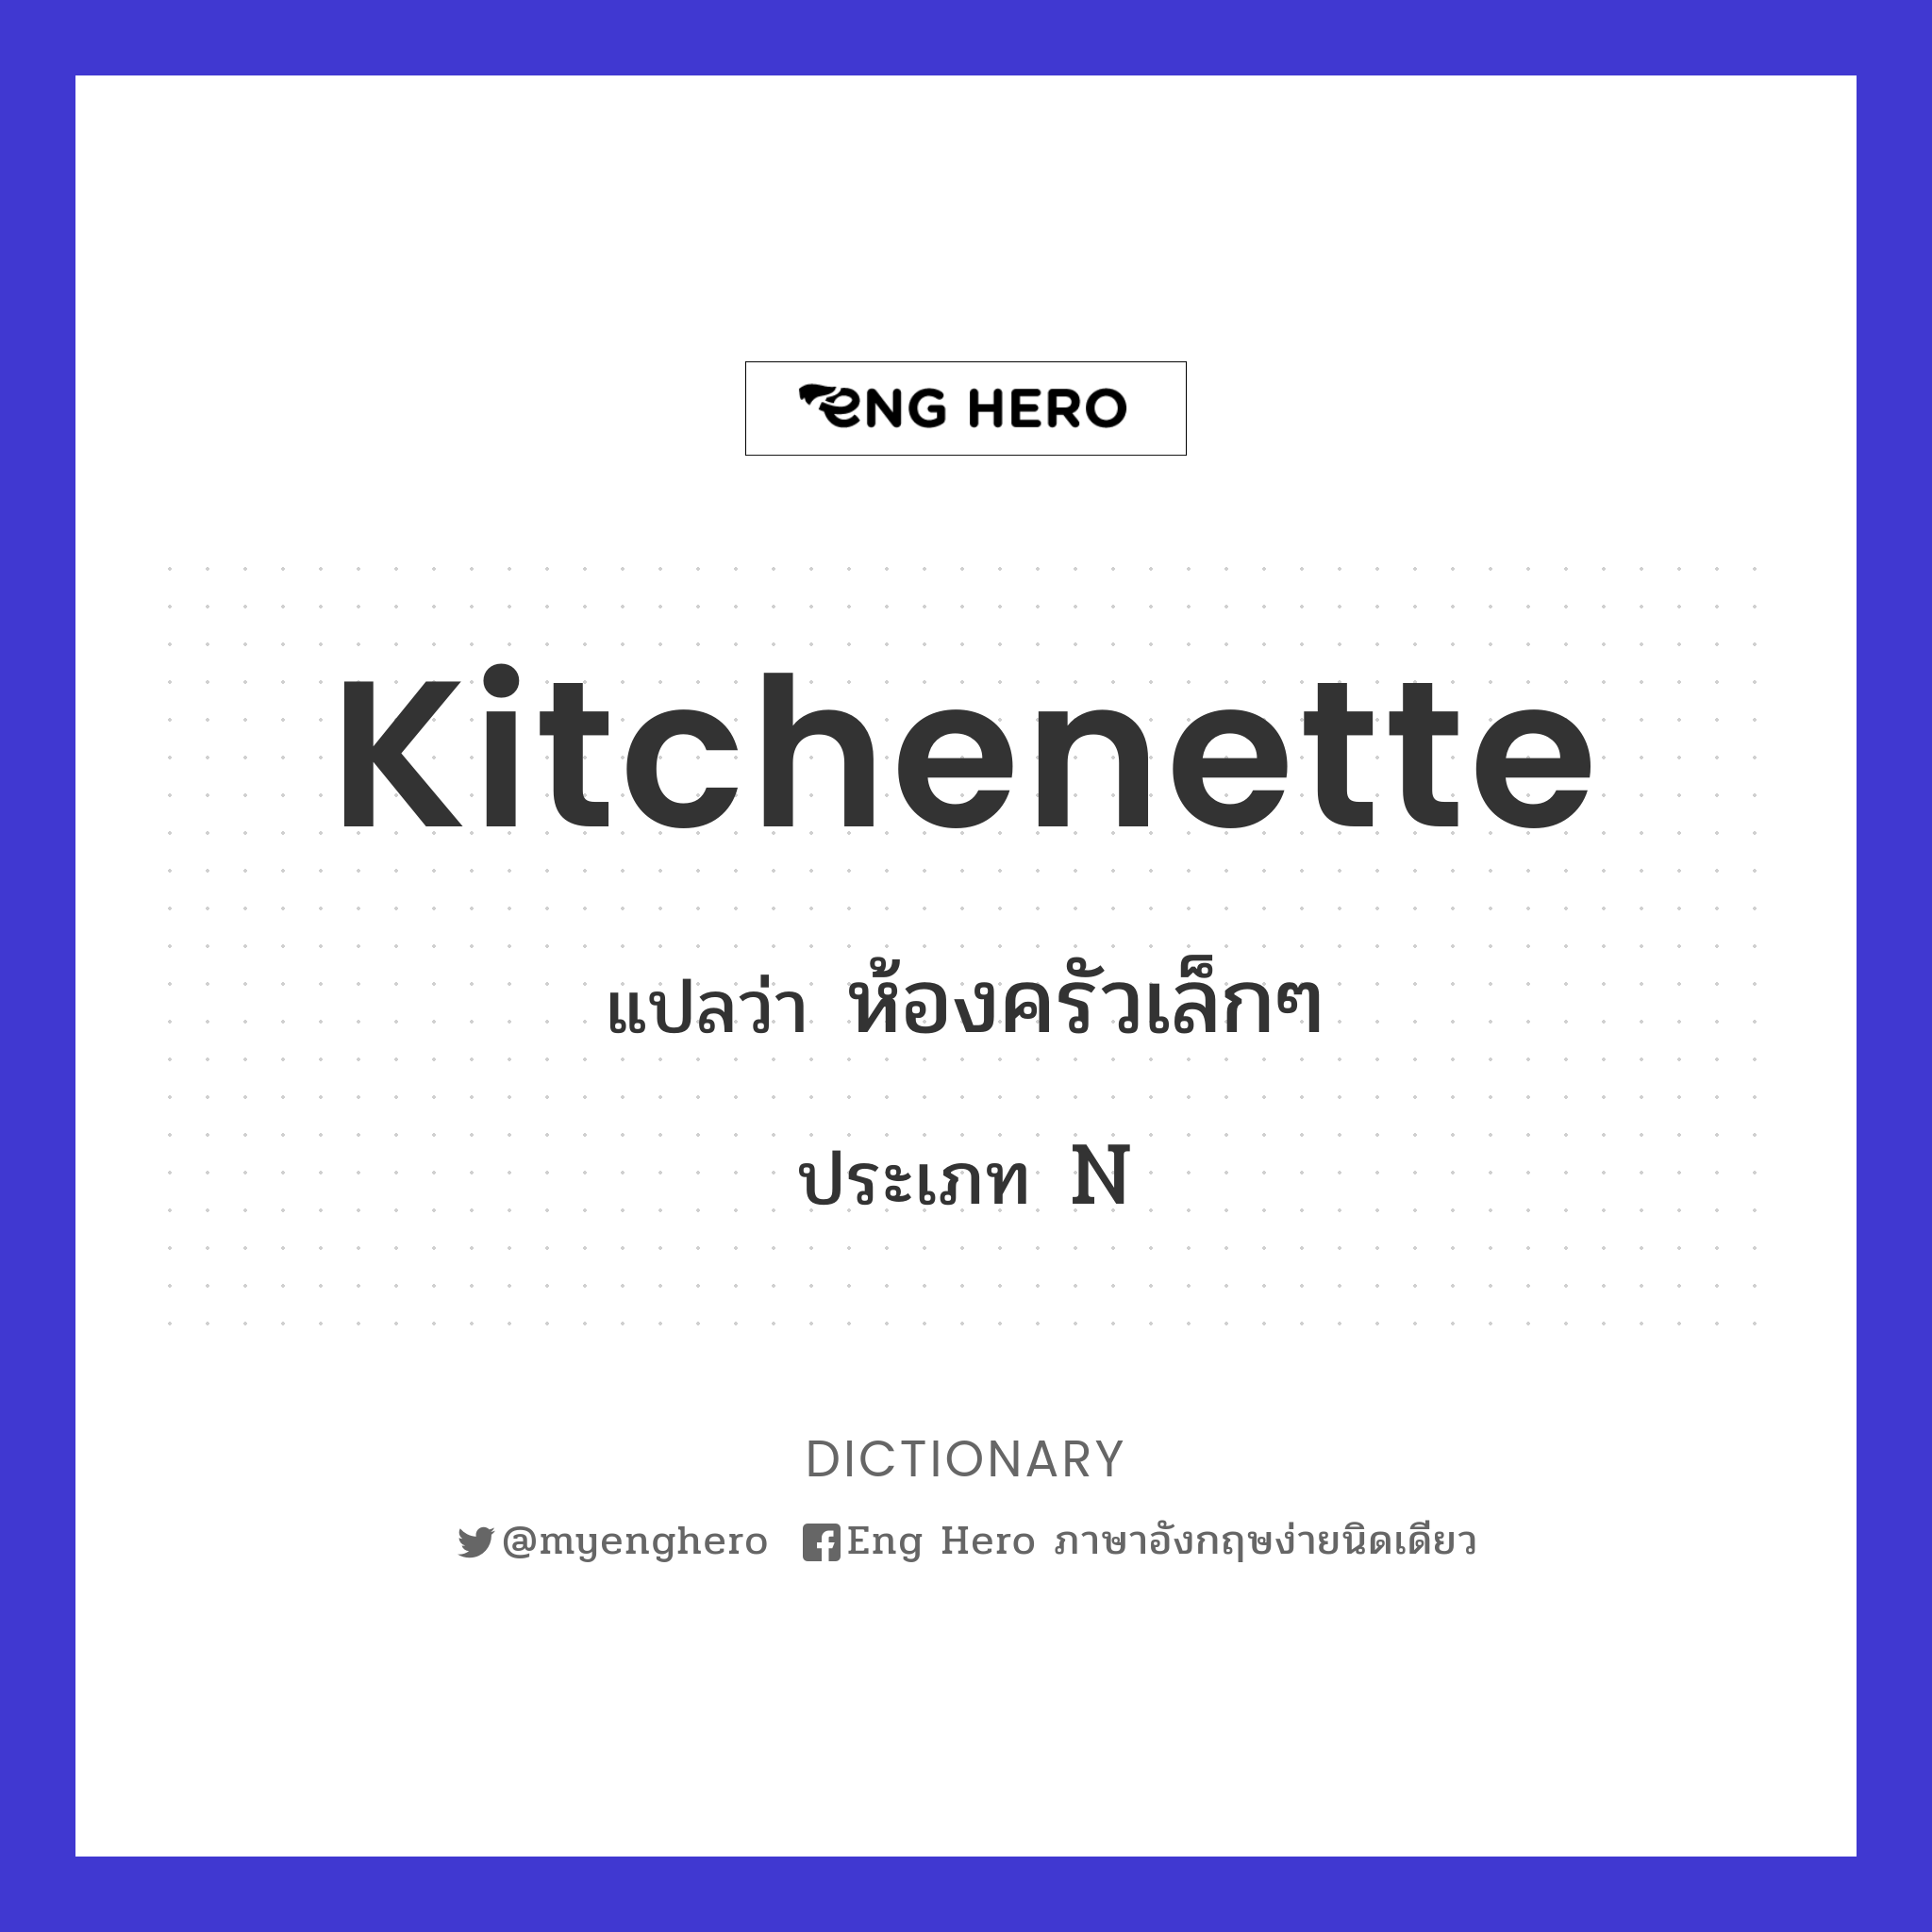 kitchenette